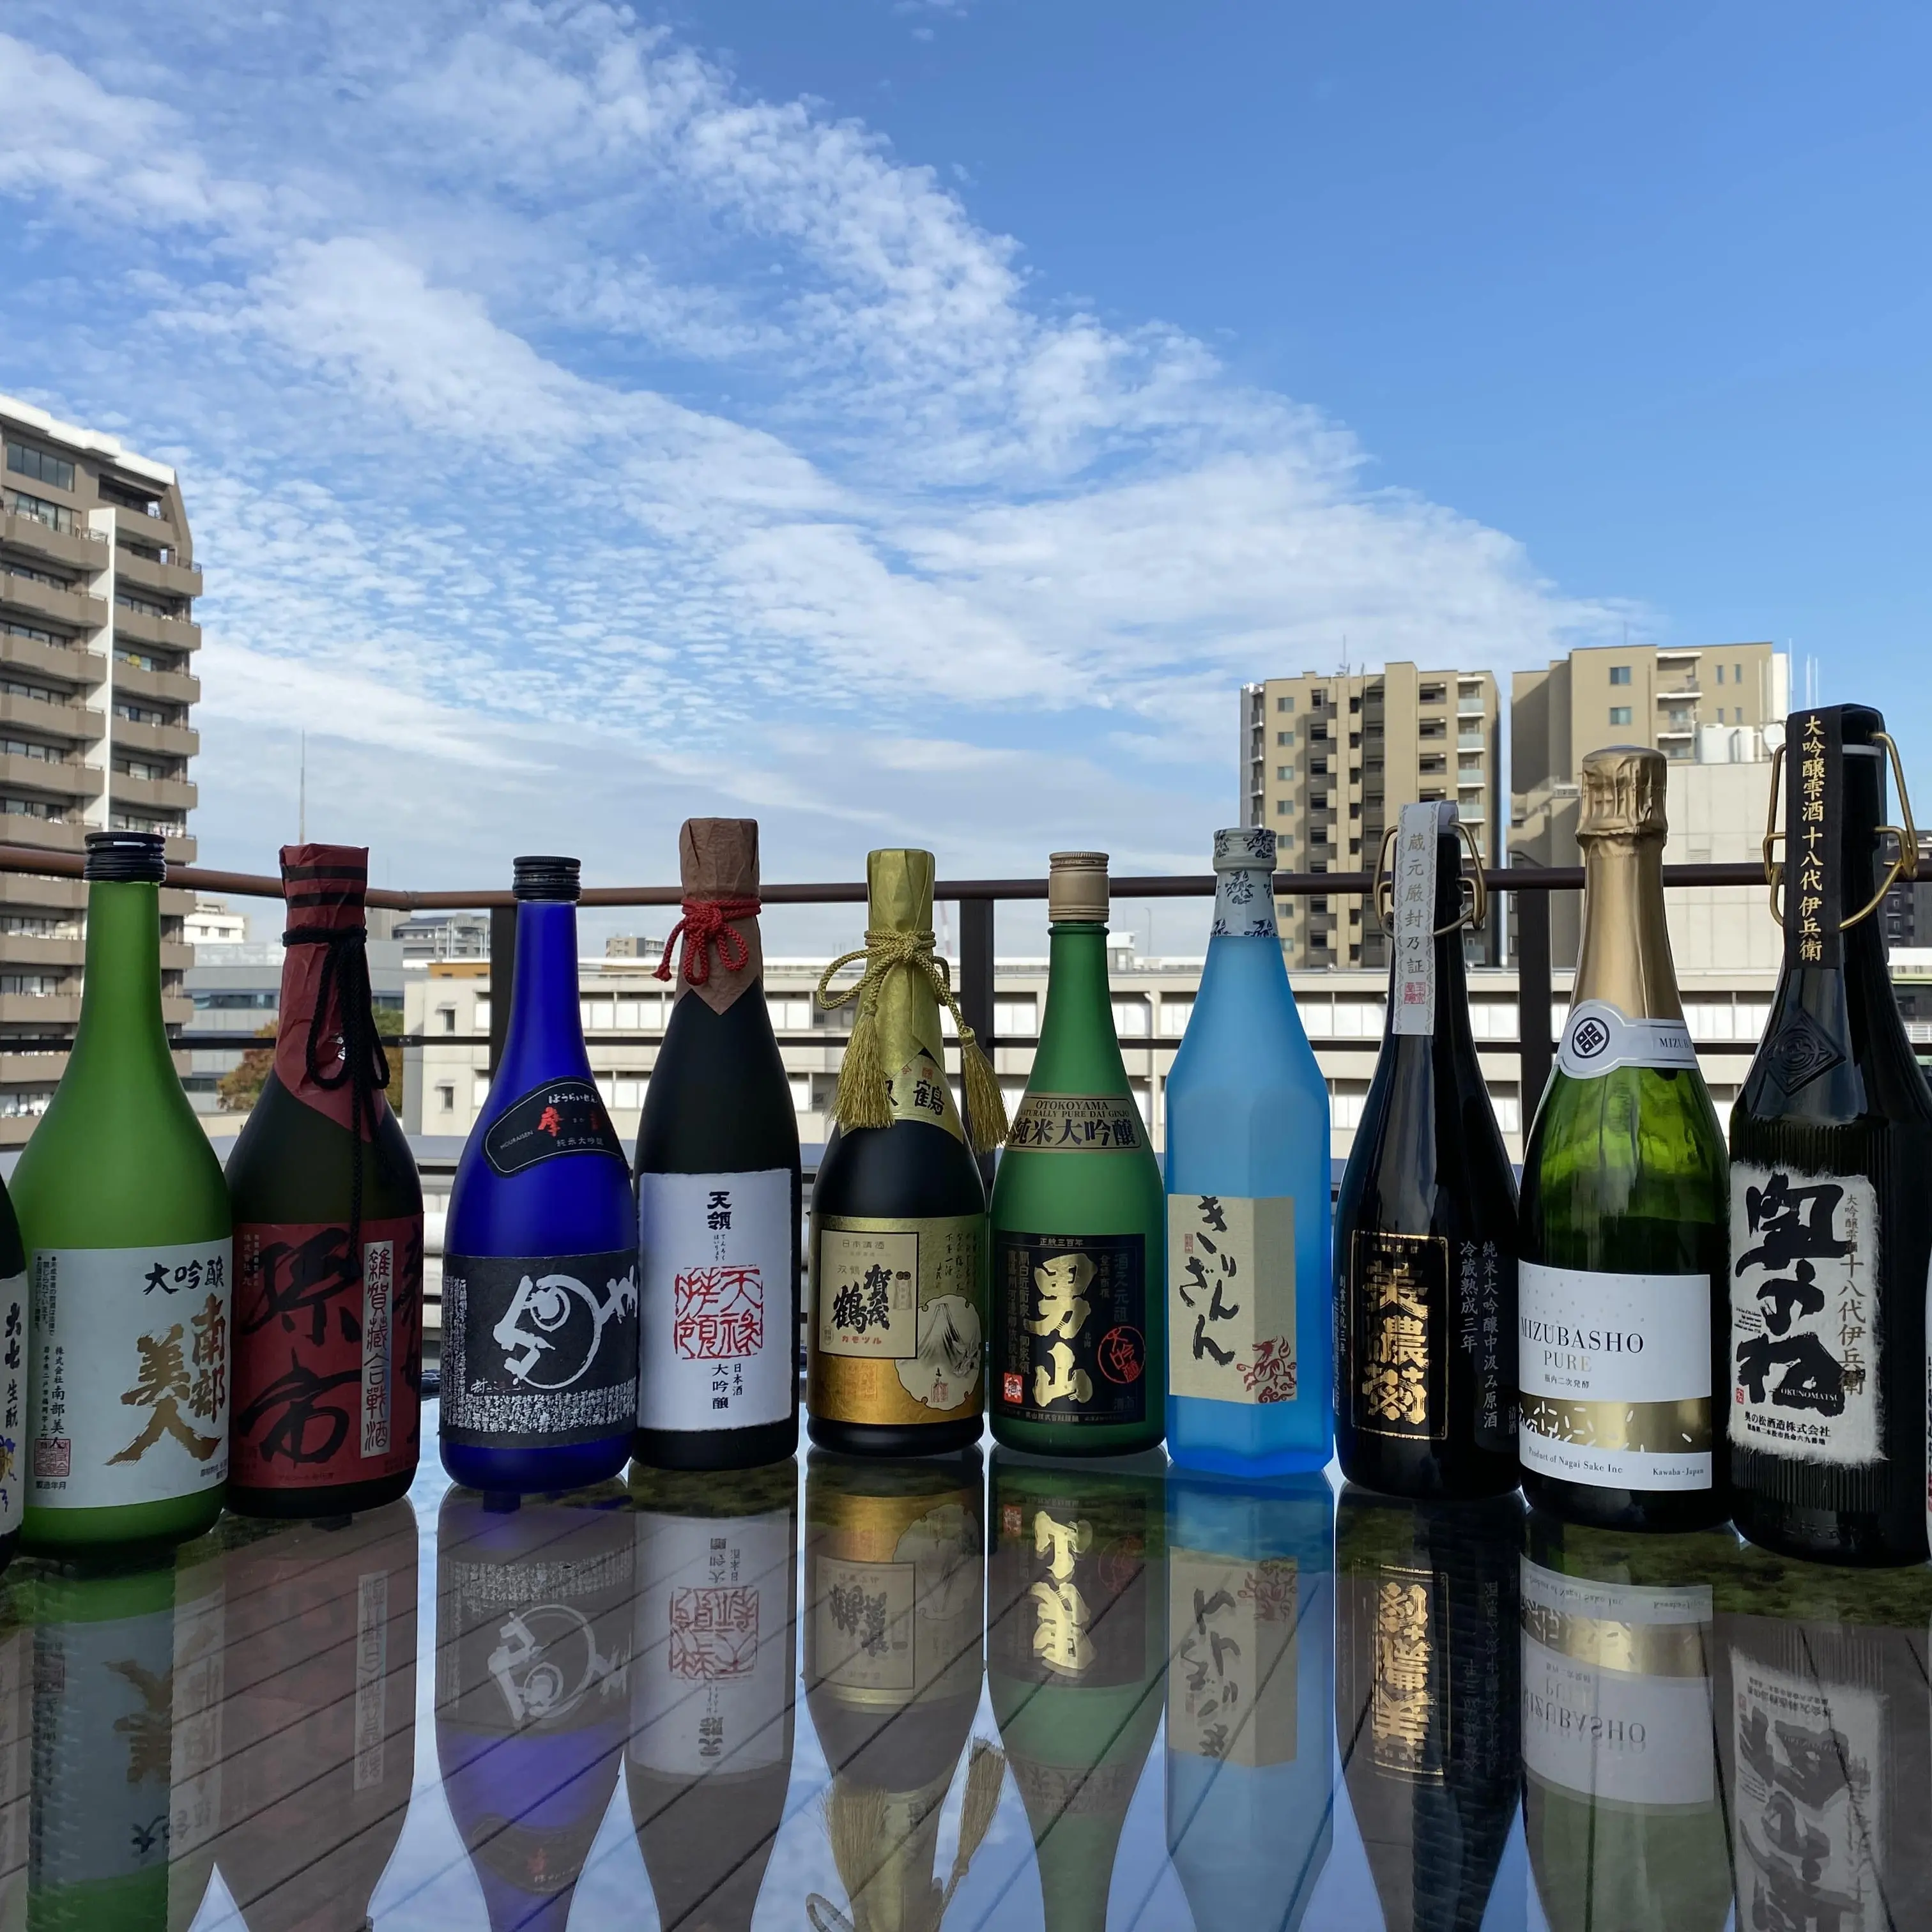 Table multi-types de saké japonais, vin, riz, idée cadeau